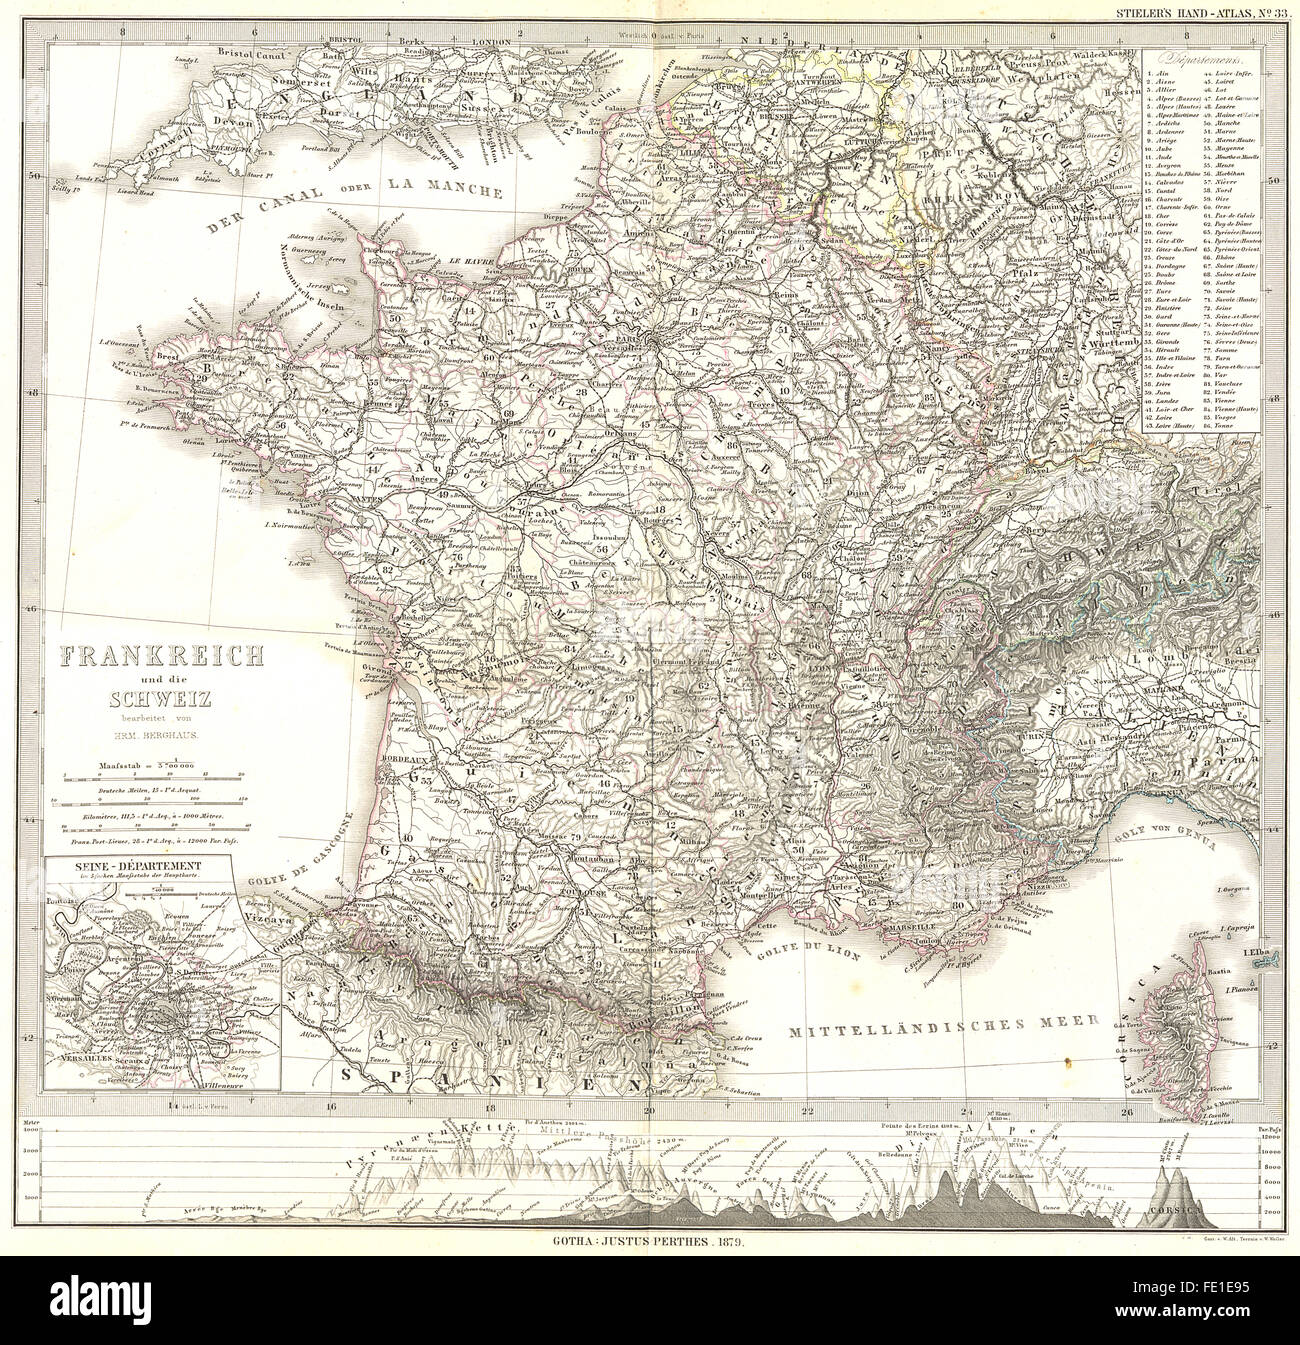 FRANKREICH: Francia Schweiz; Seine Departement, 1879 Mappa antichi Foto Stock